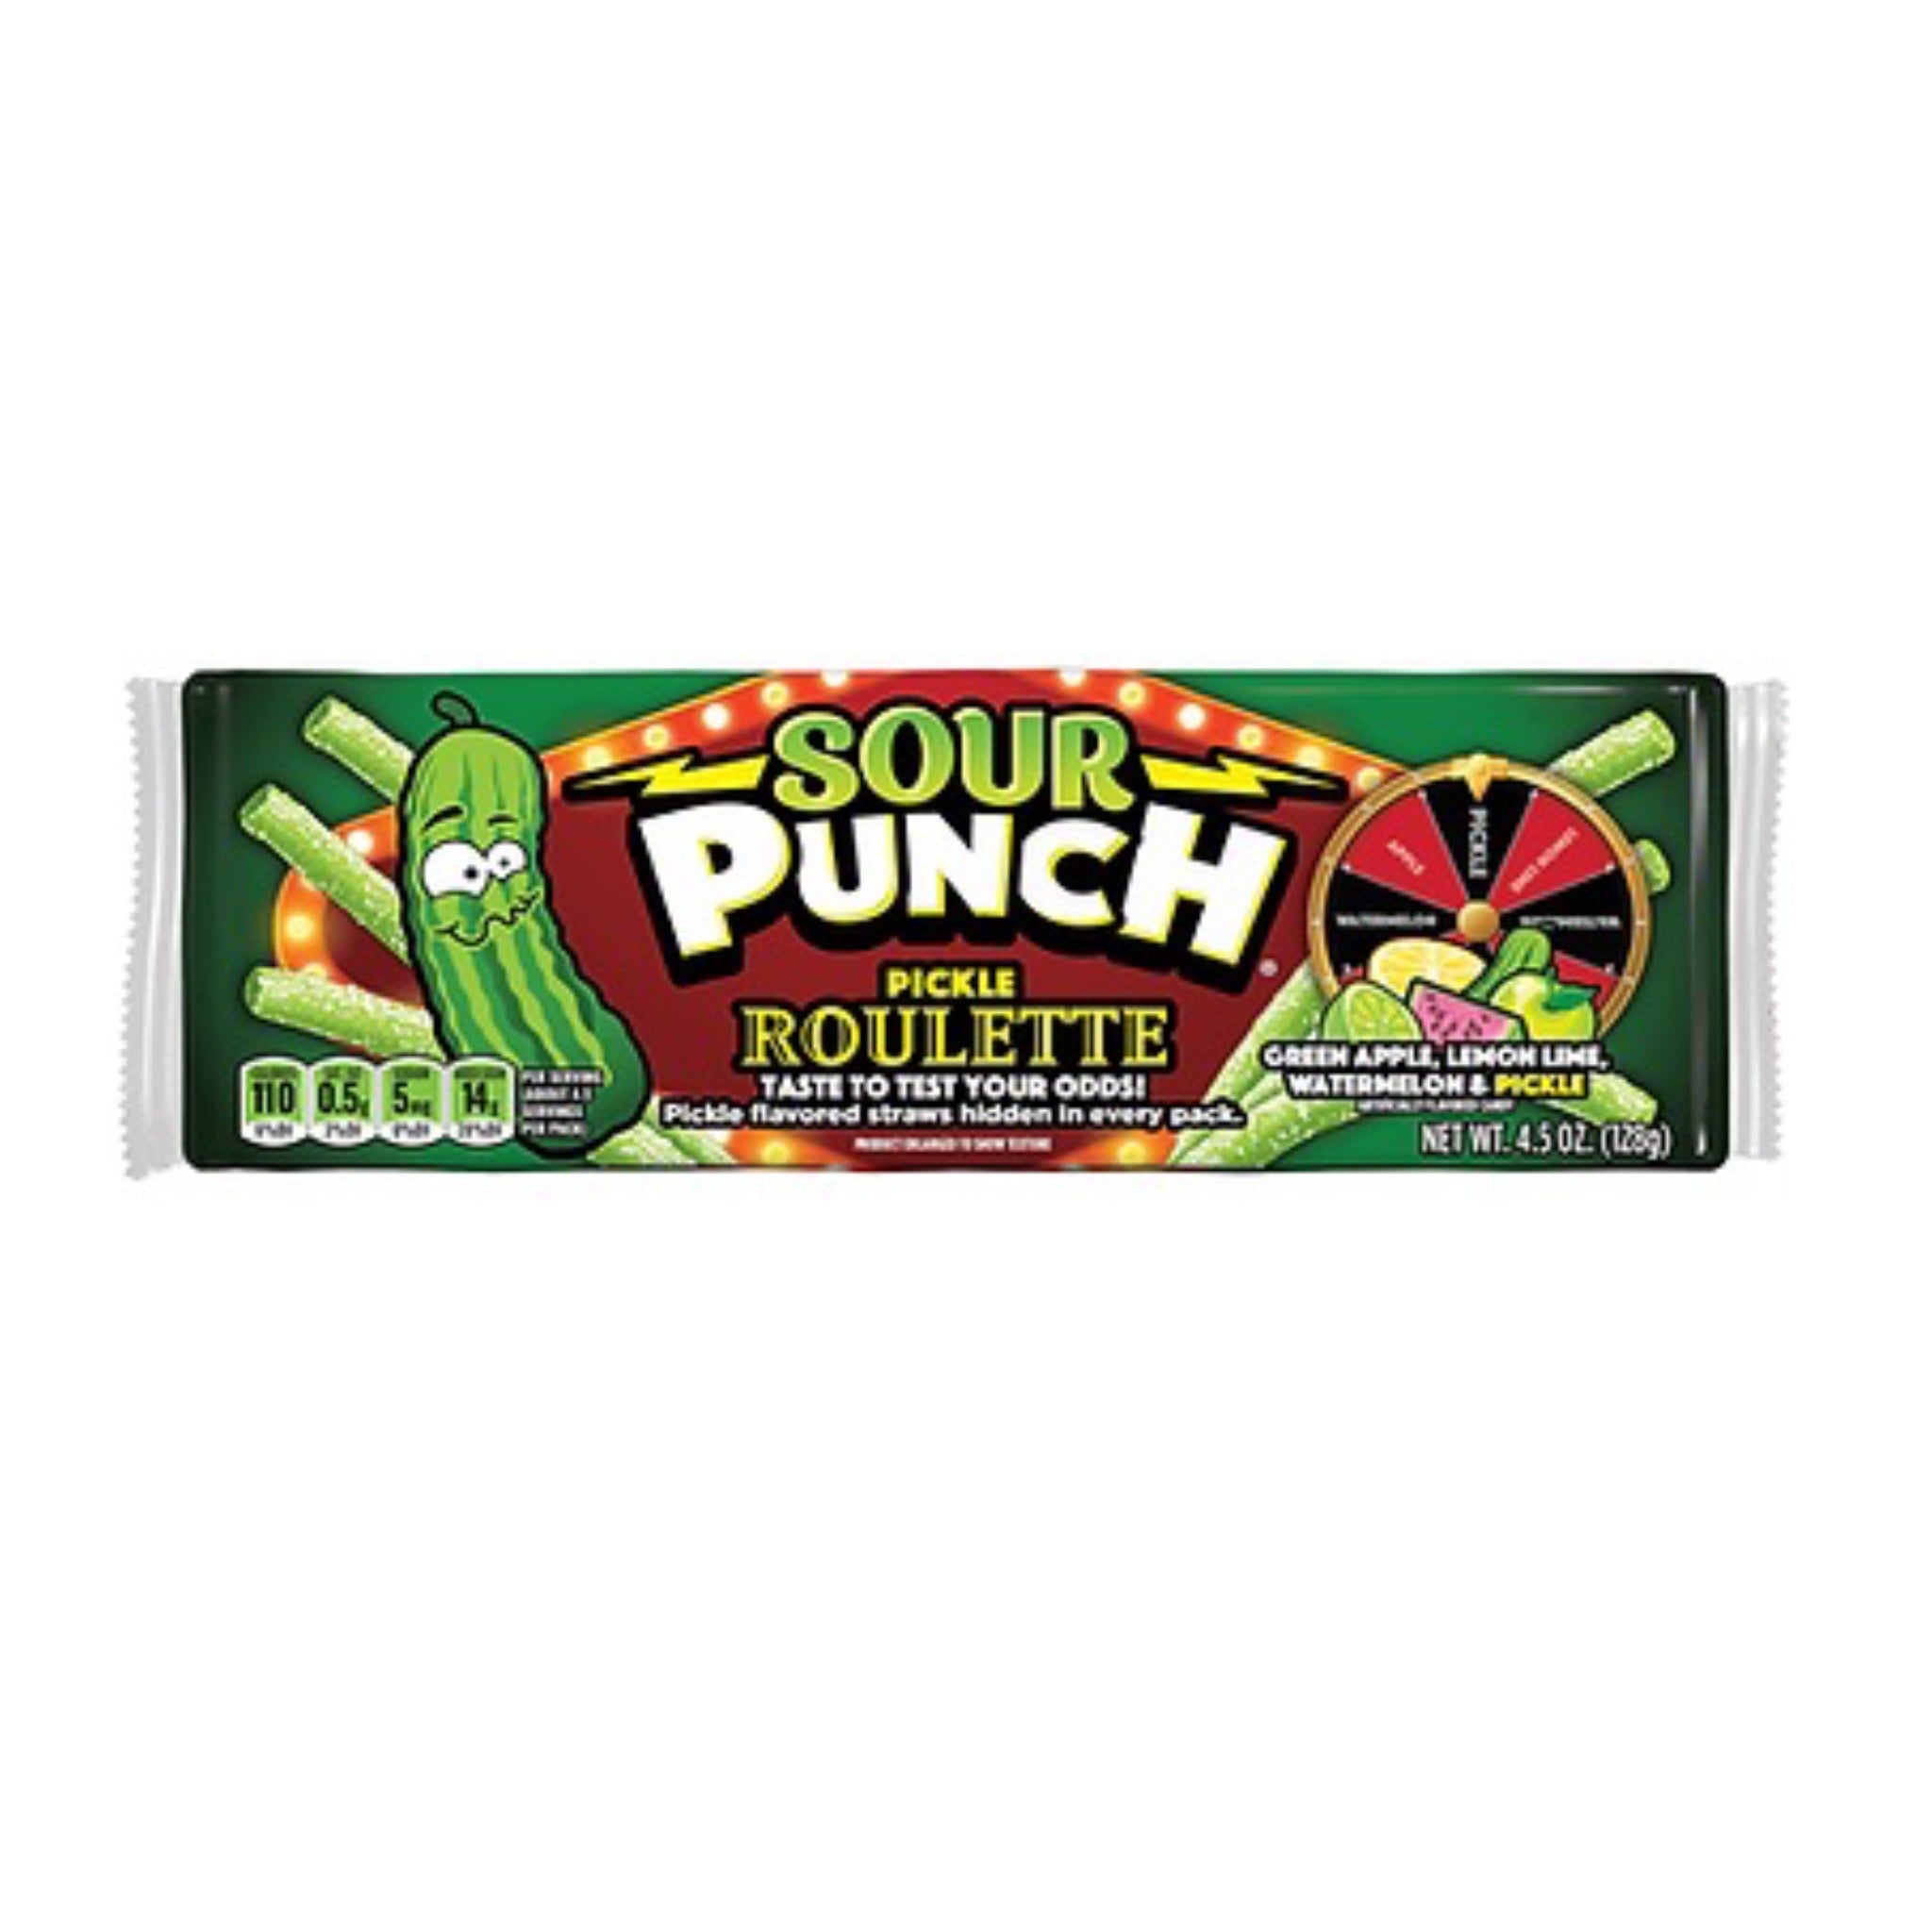 Sour punch pickle roulette